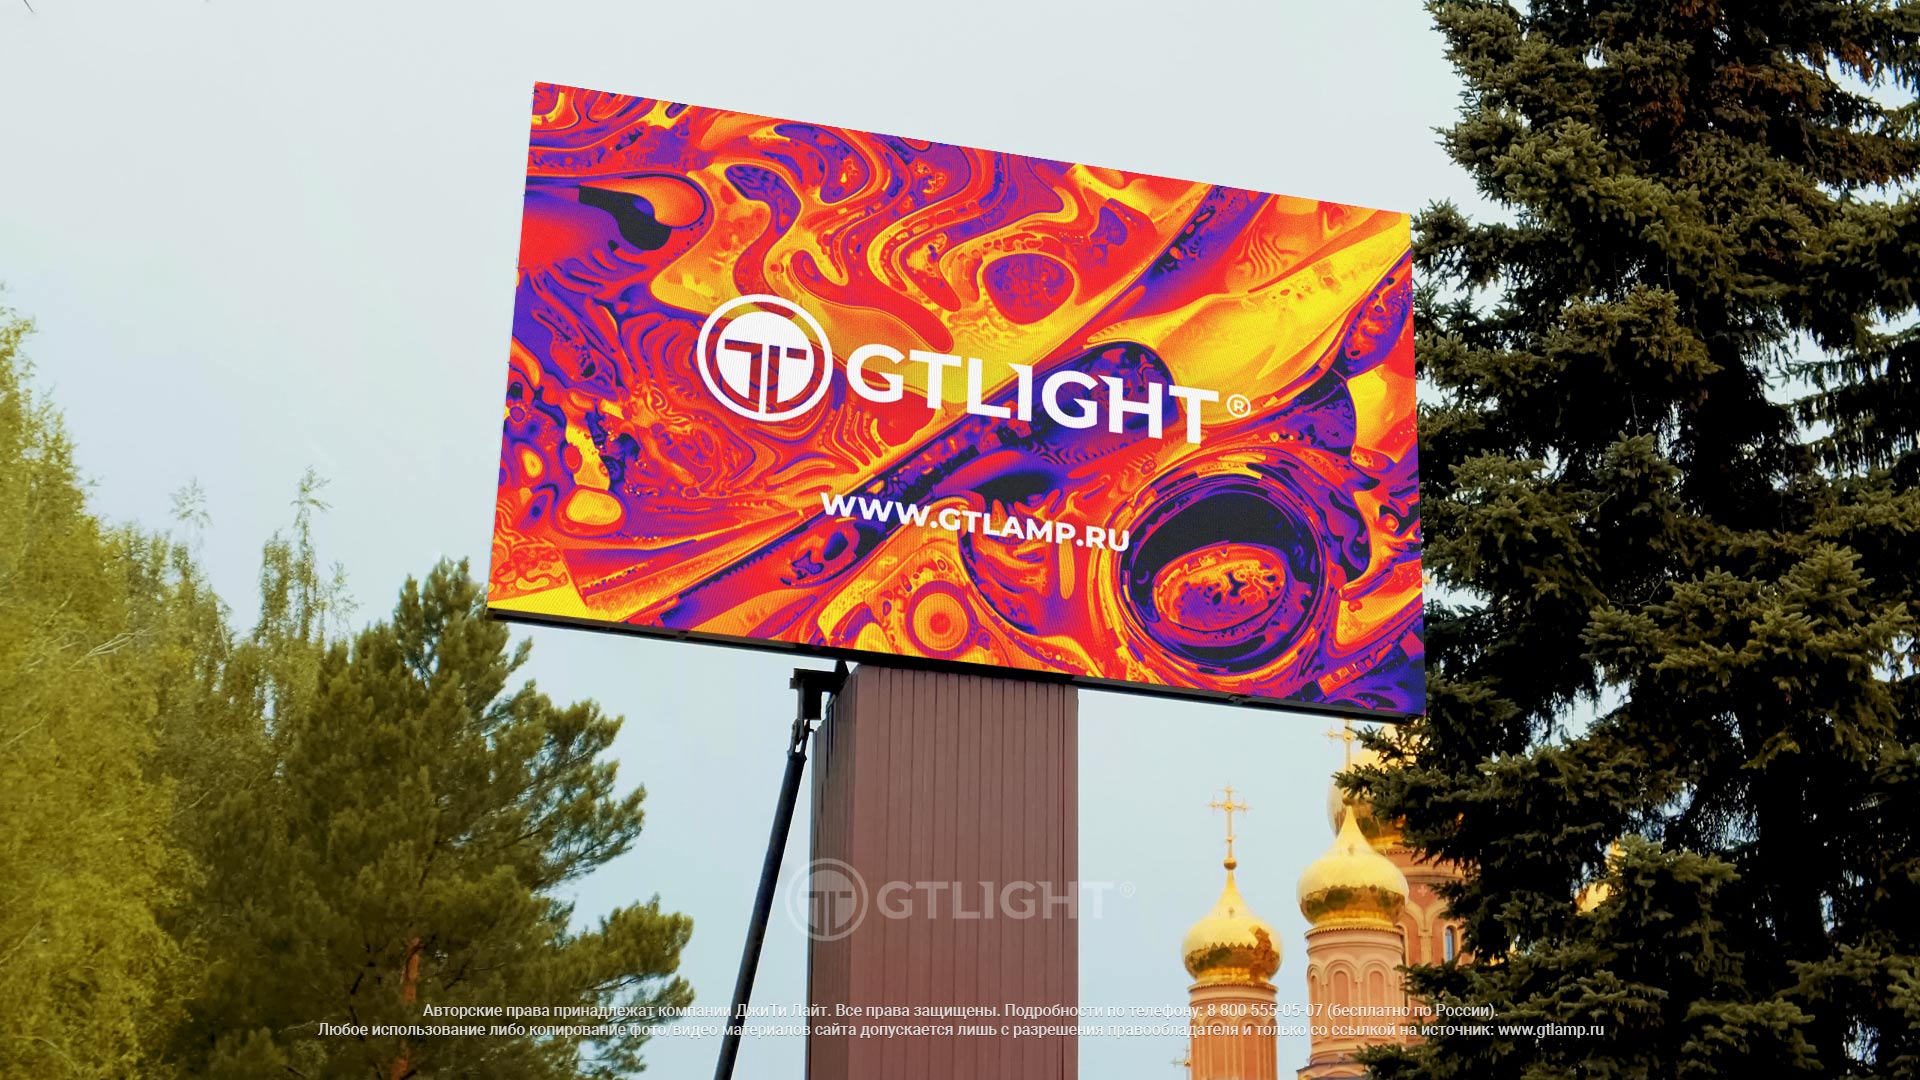 Светодиодный уличный экран для рекламы, Осинники, рекламное агентство «Площадь»